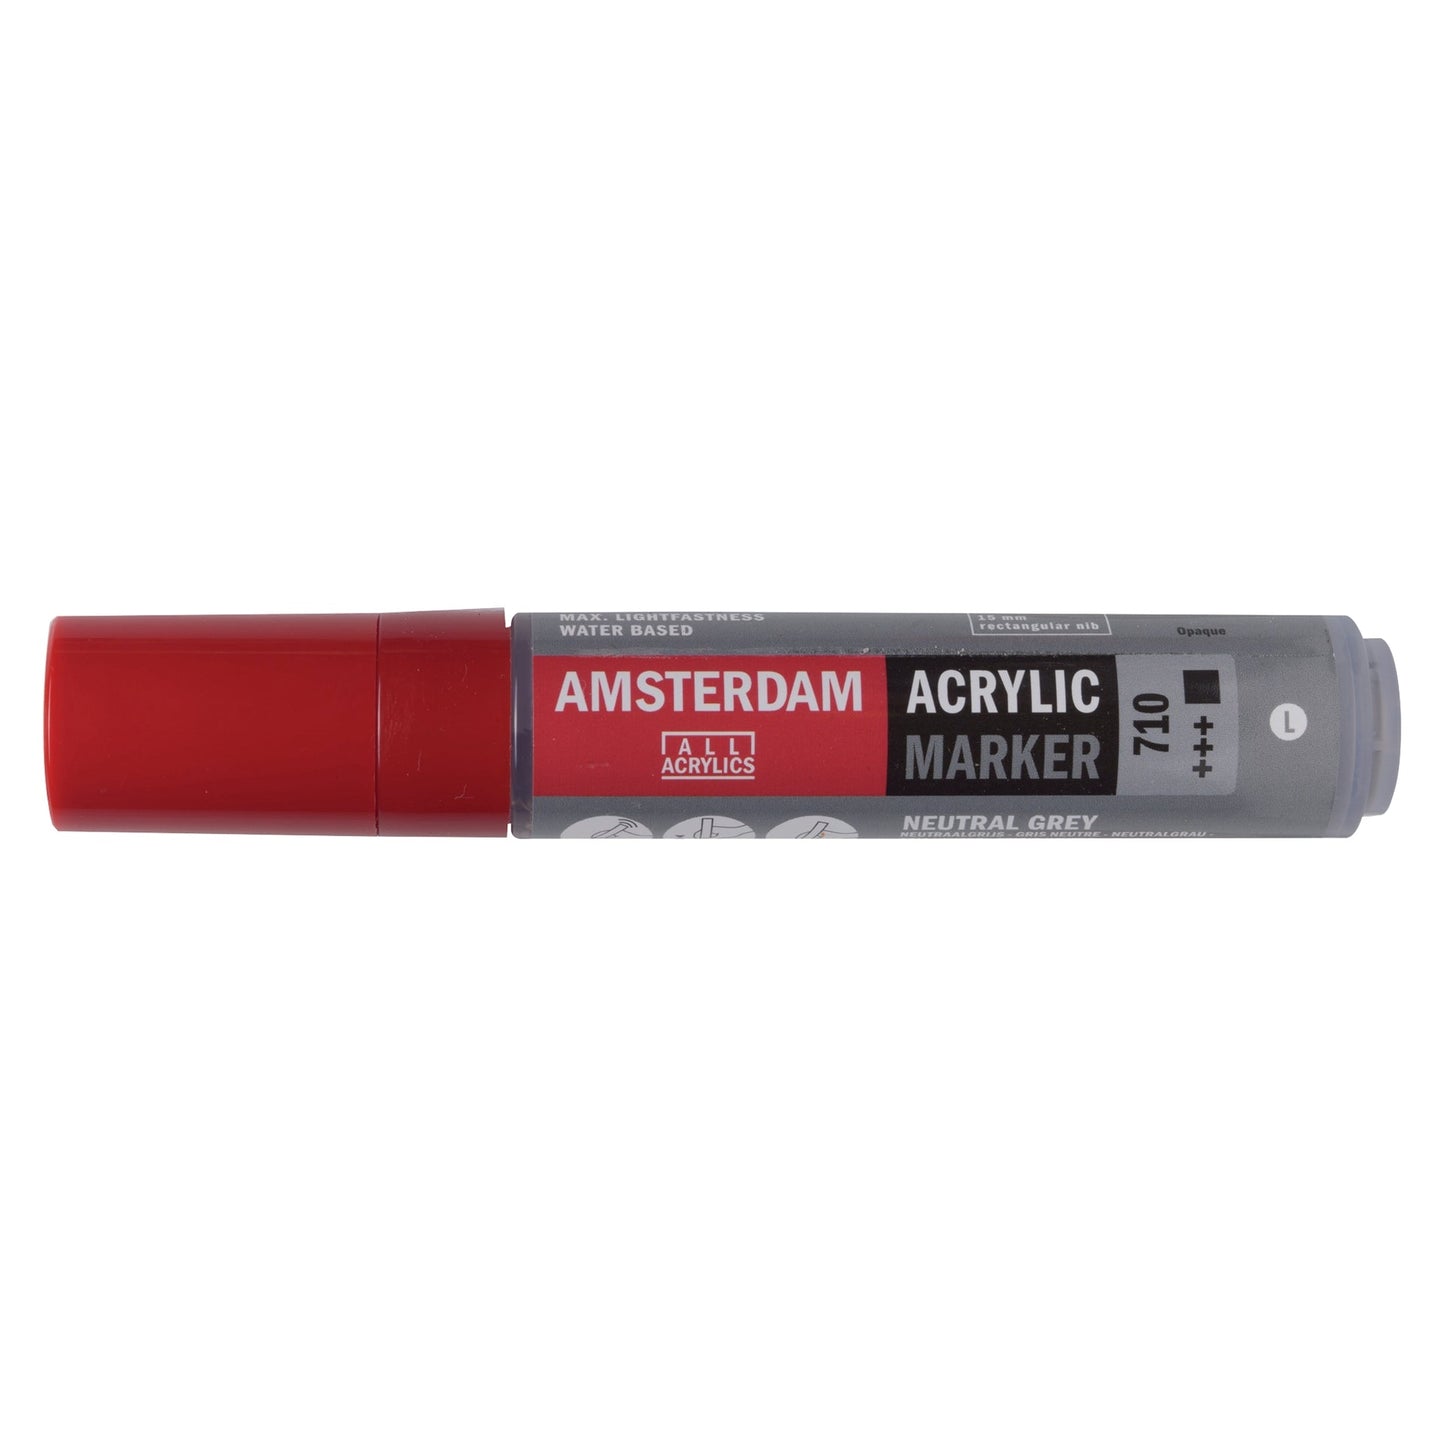 Amsterdam Acrylic Marker 710 Neutral Grey - Large 15mm Rectangular Nib - theartshop.com.au